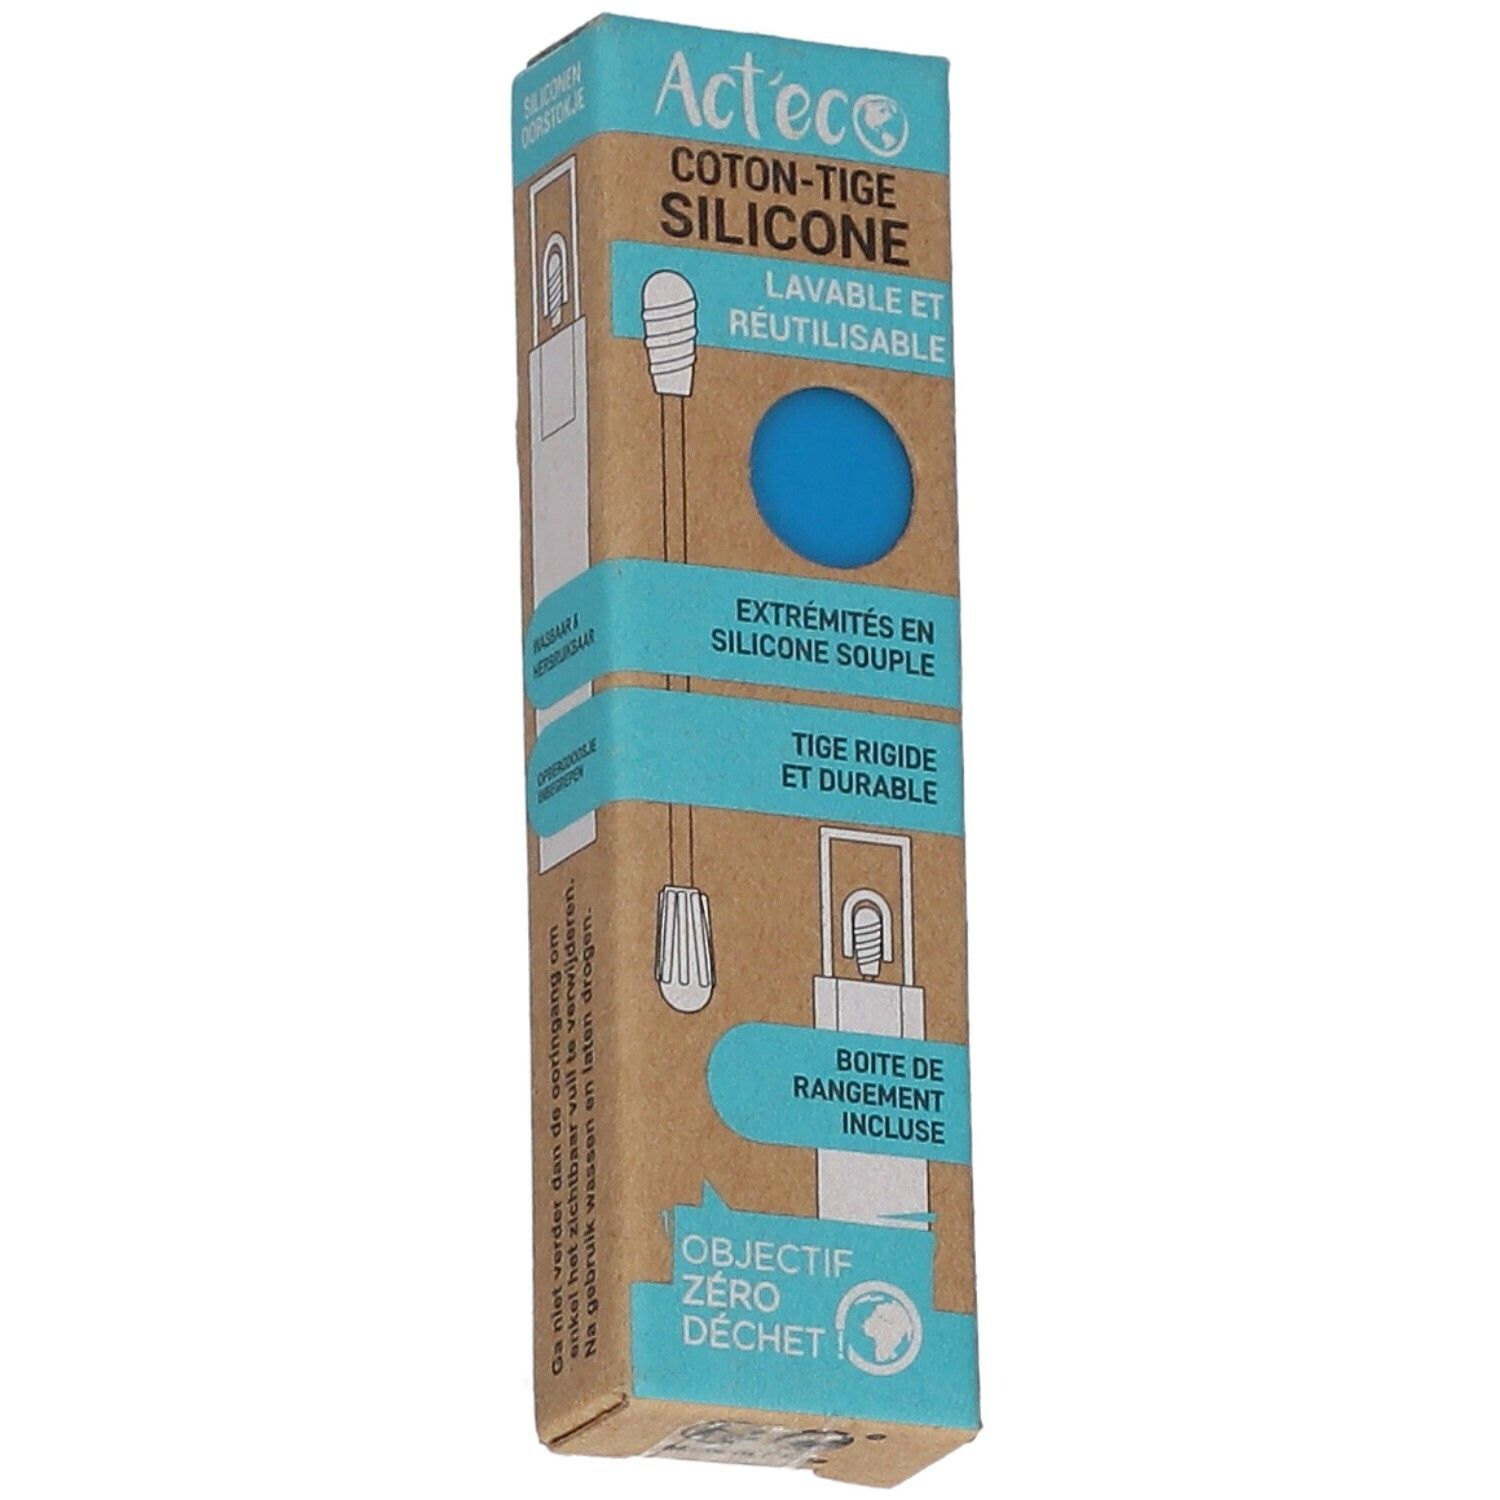 Act'eco Coton-Tige Réutilisable Silicone Bleu